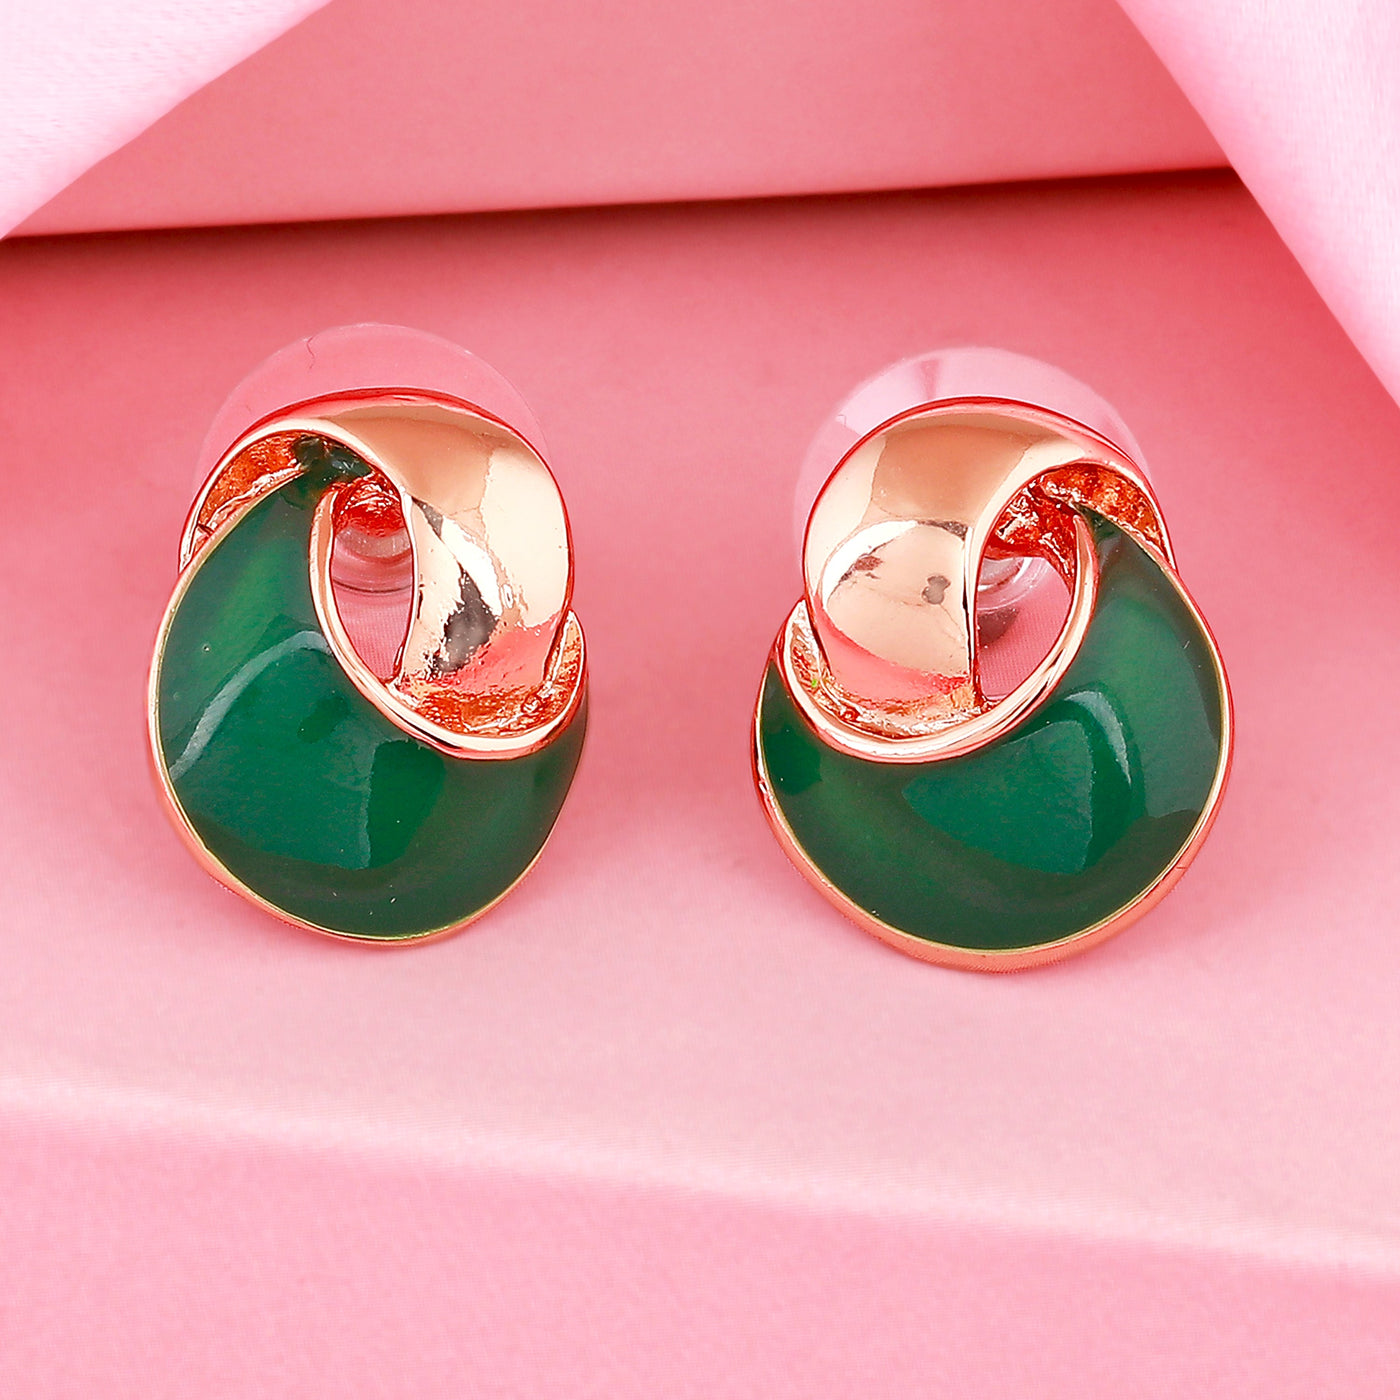 Estele Fancy designer gold plated with green enamel stud earrings for women